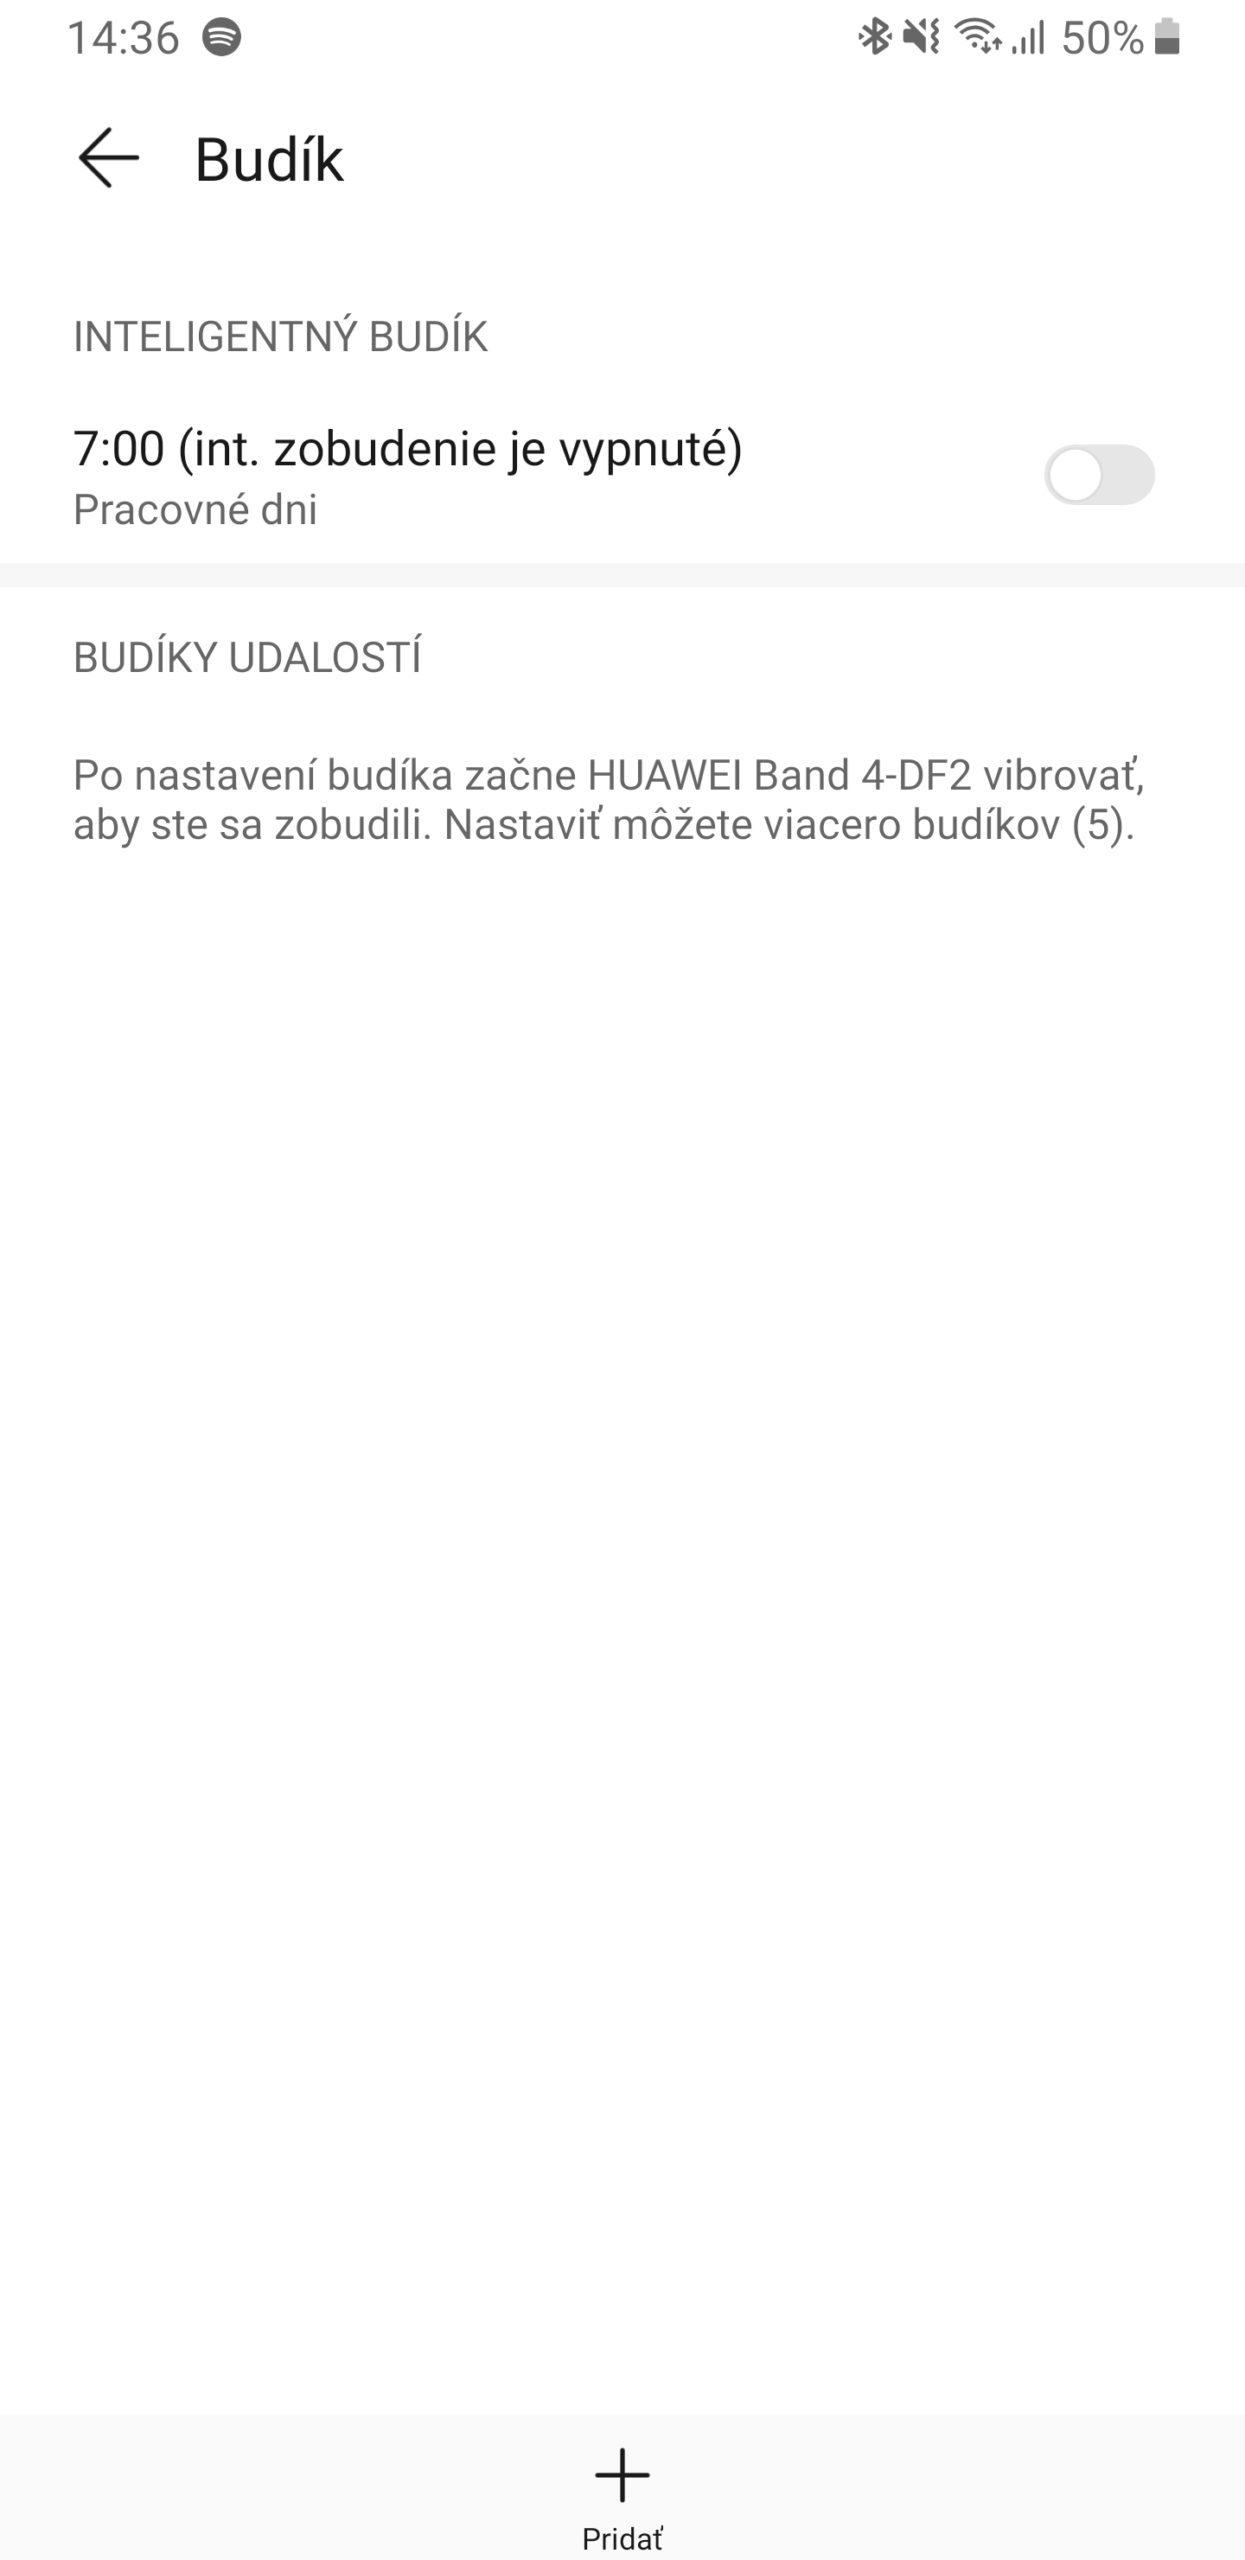 huawei band 4